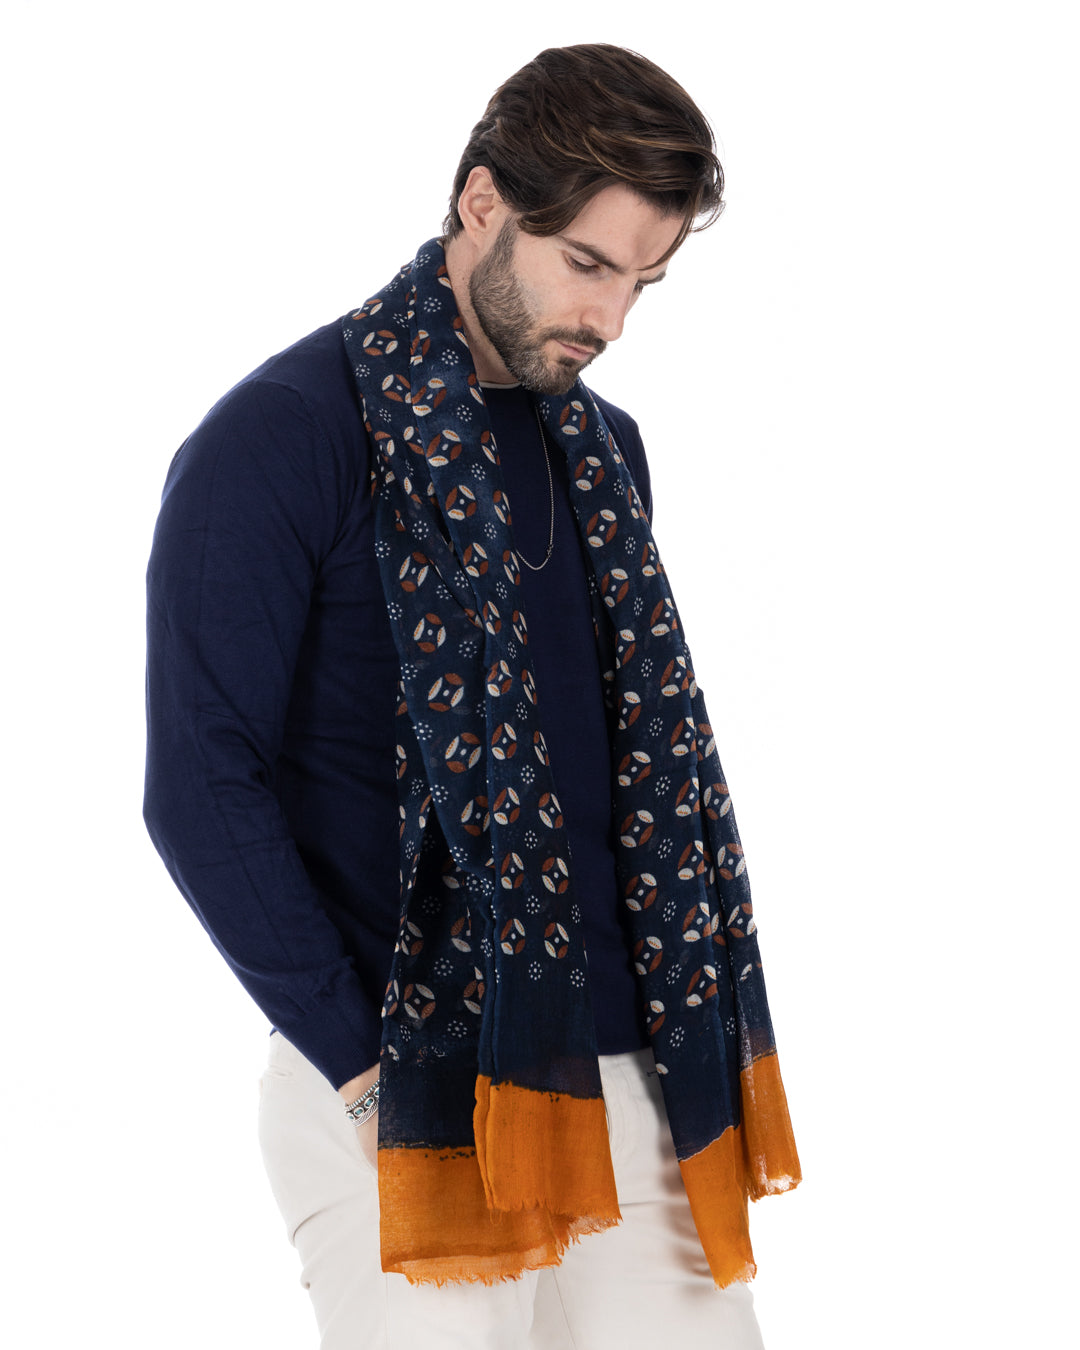 Meknes - blue wool scarf